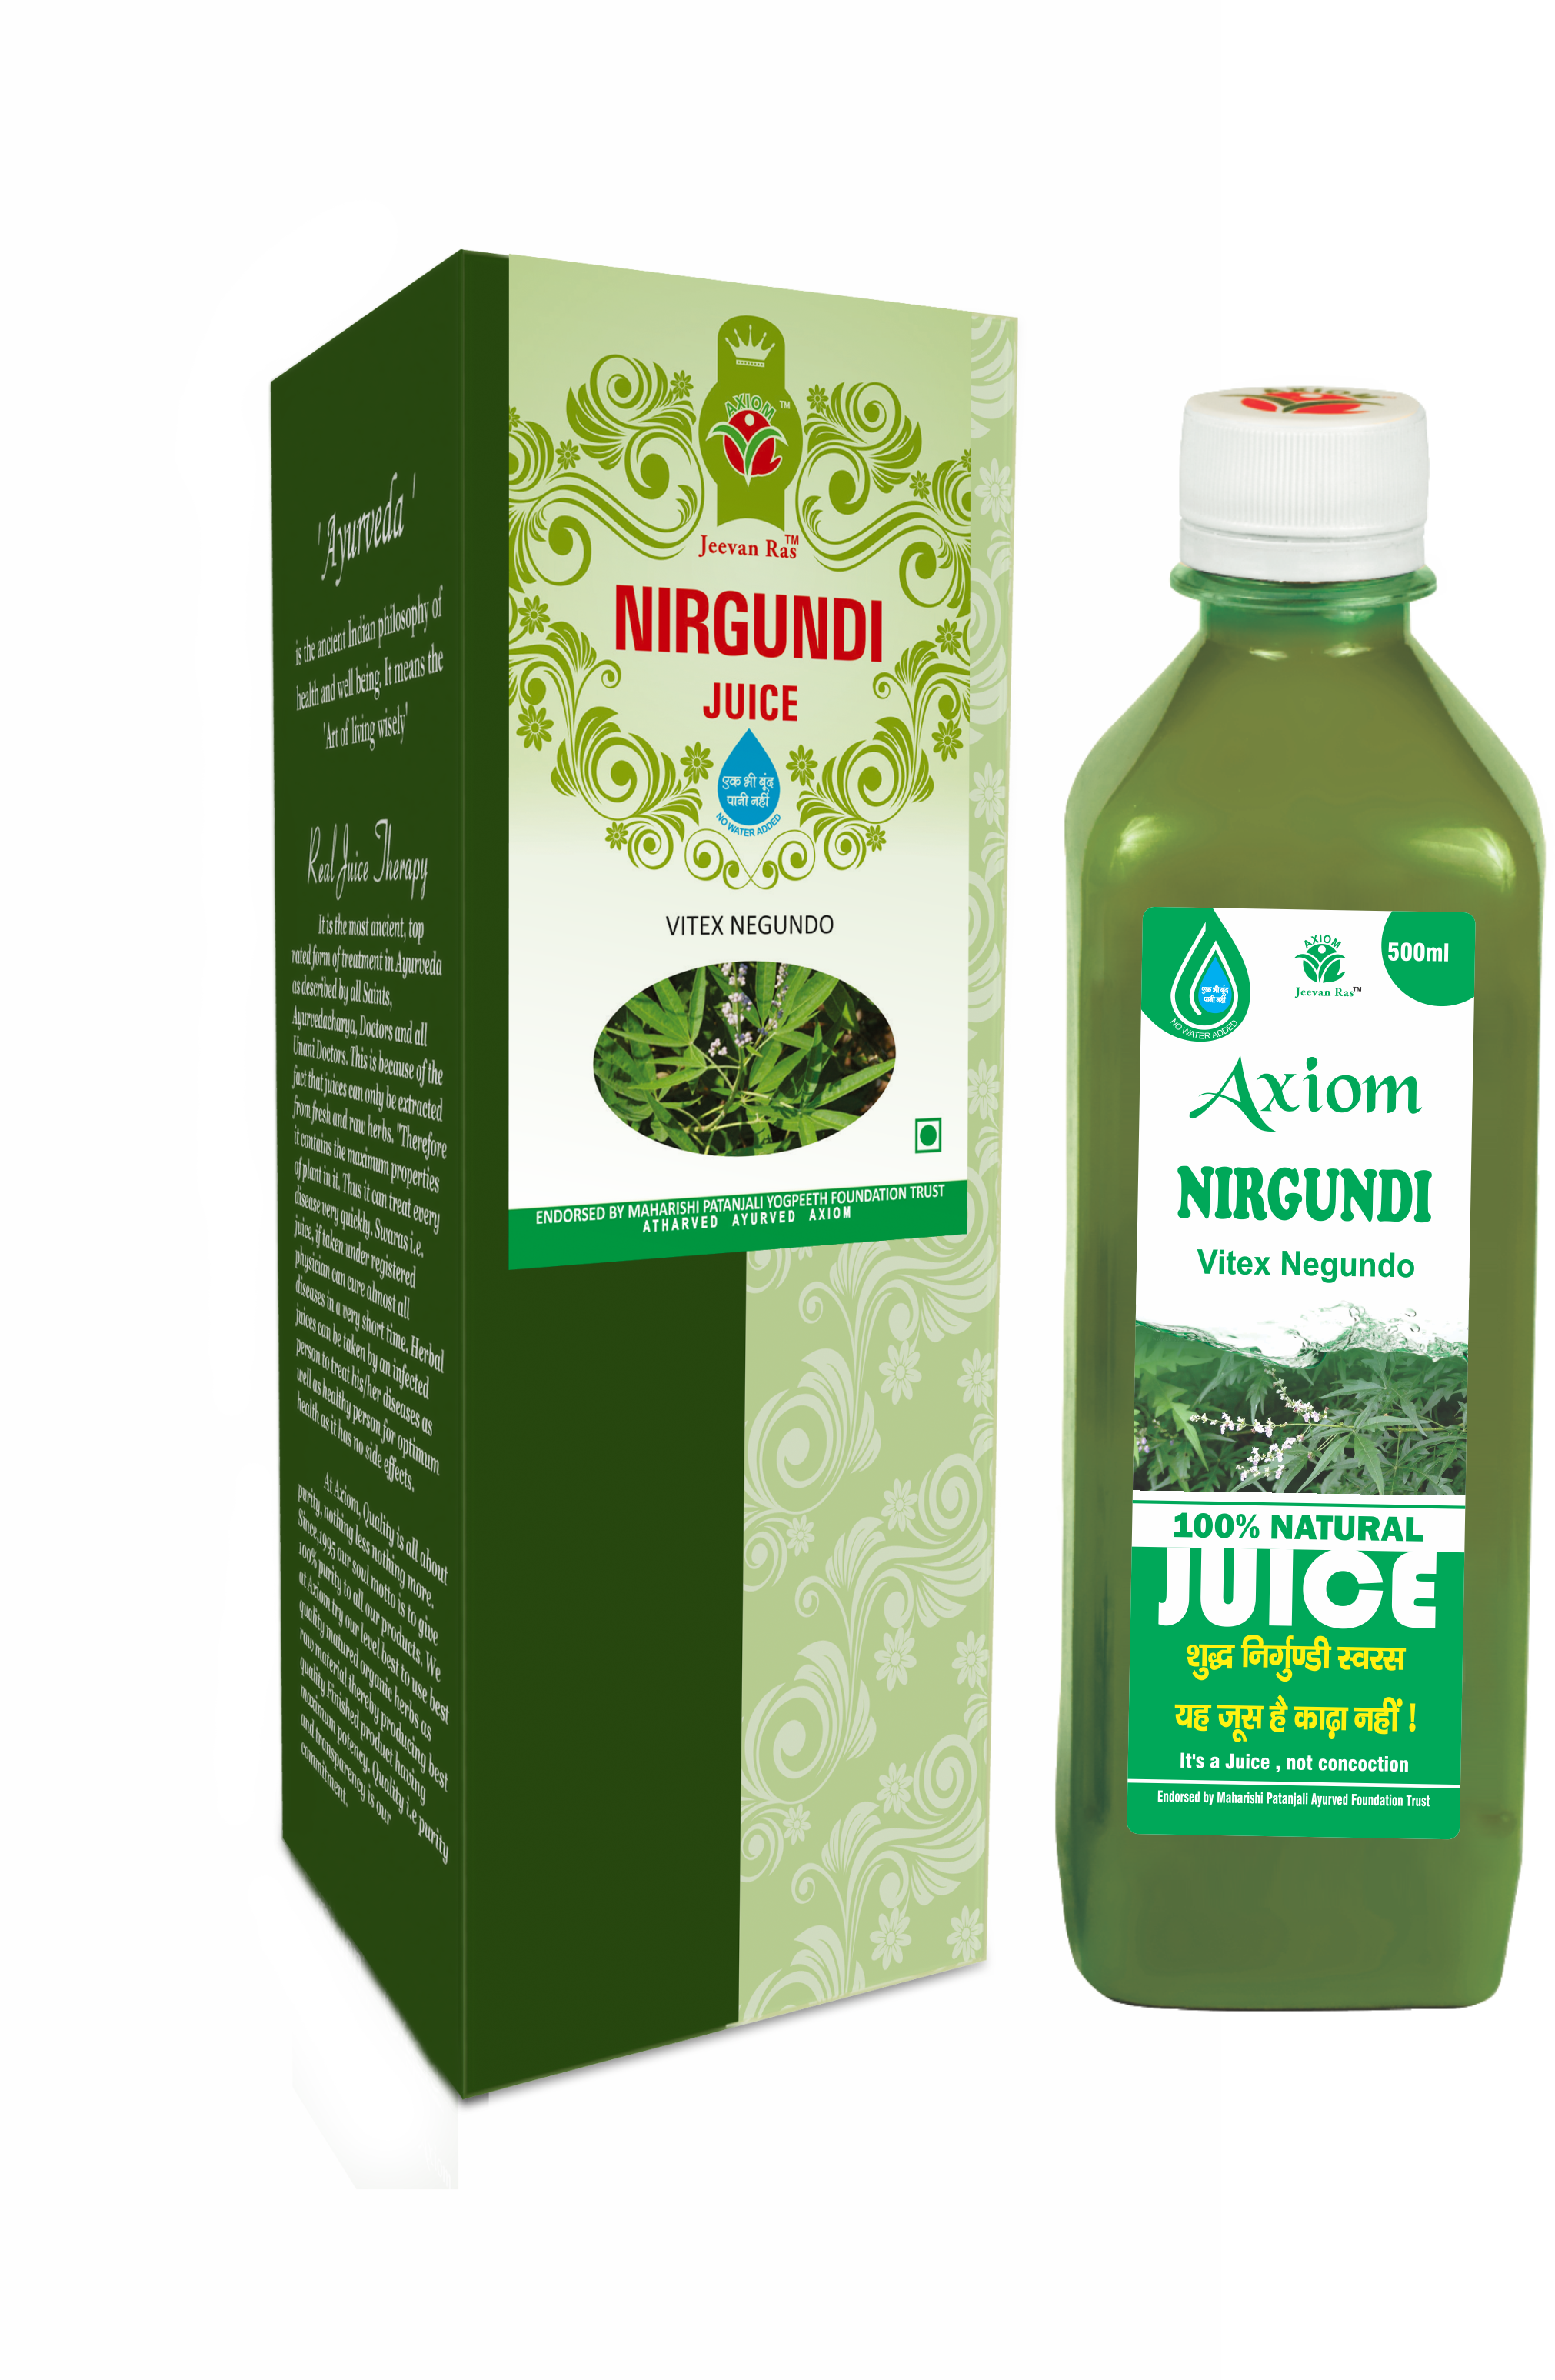 Buy Axiom Nirgundi Juice at Best Price Online